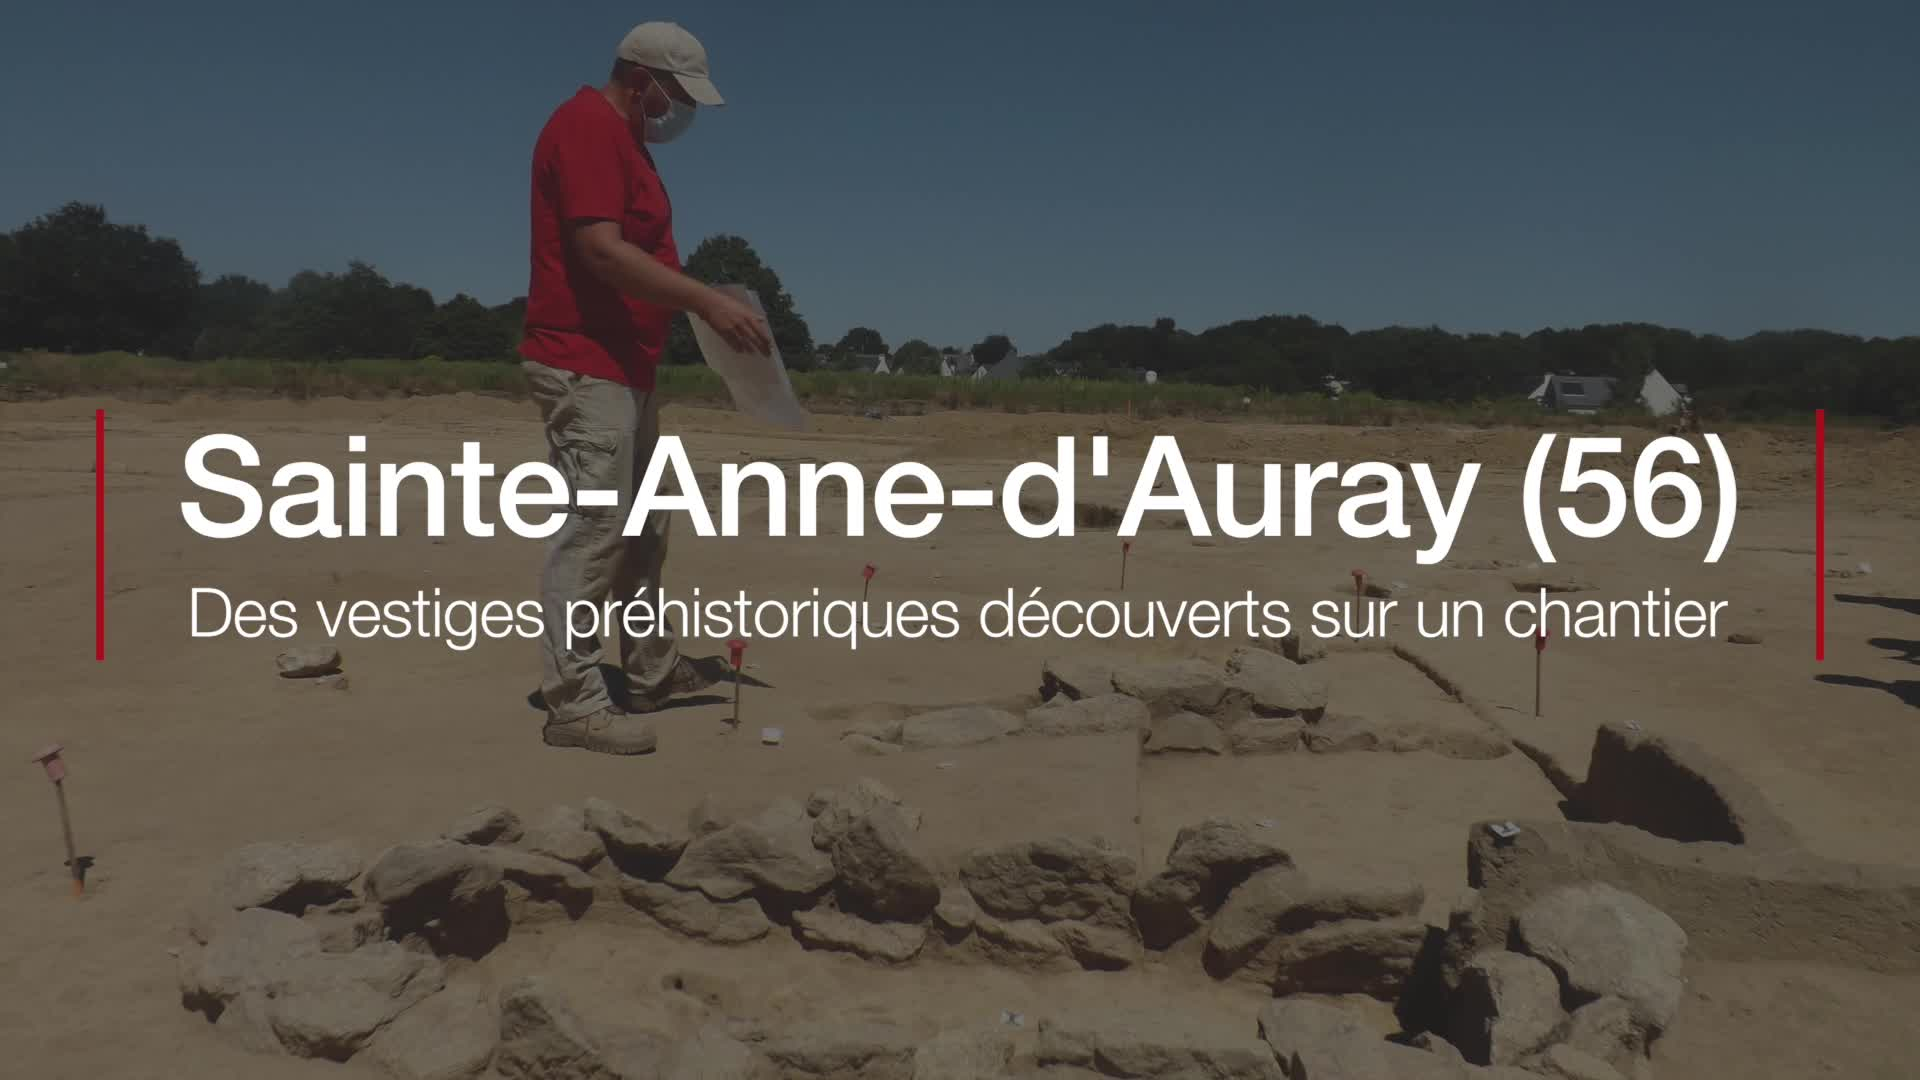 Sainte-Anne-d'Auray (56). Des vestiges préhistoriques découverts sur un chantier (Le Télégramme)